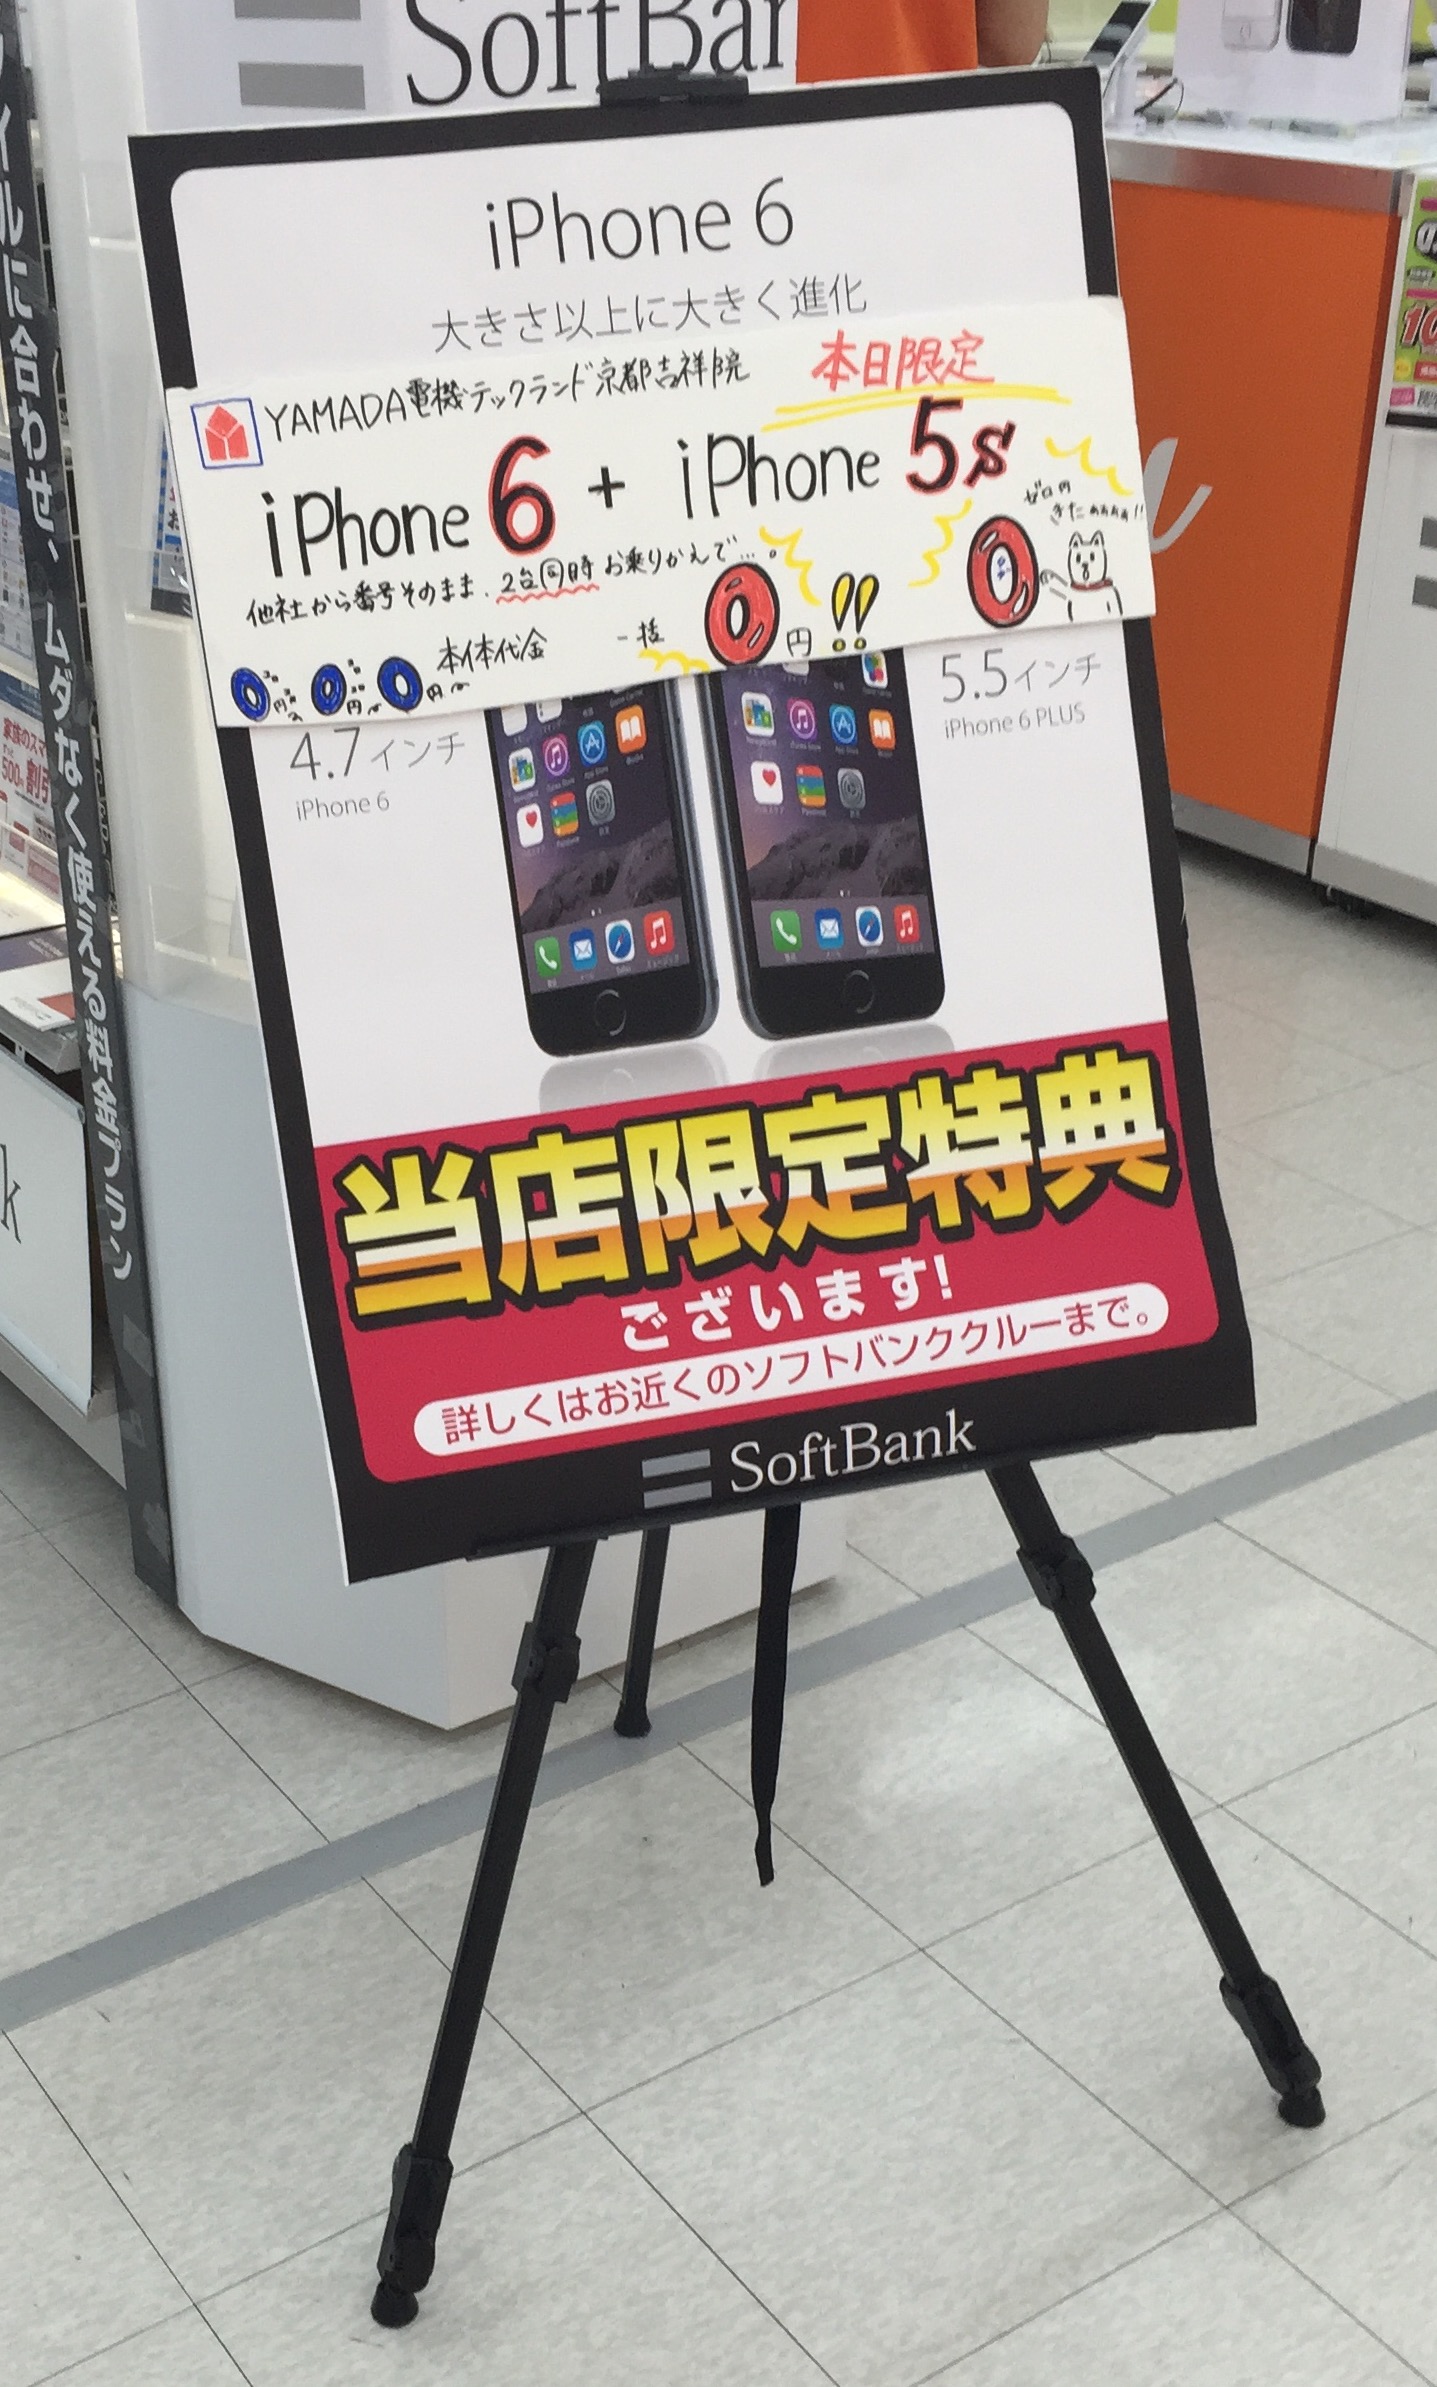 Iphone6 Iphone5s一括0円情報 ヤマダ電機京都吉祥院店 通信ソムリエの経験談 携帯乞食でスマホを乗り換えた方法と実際の収支